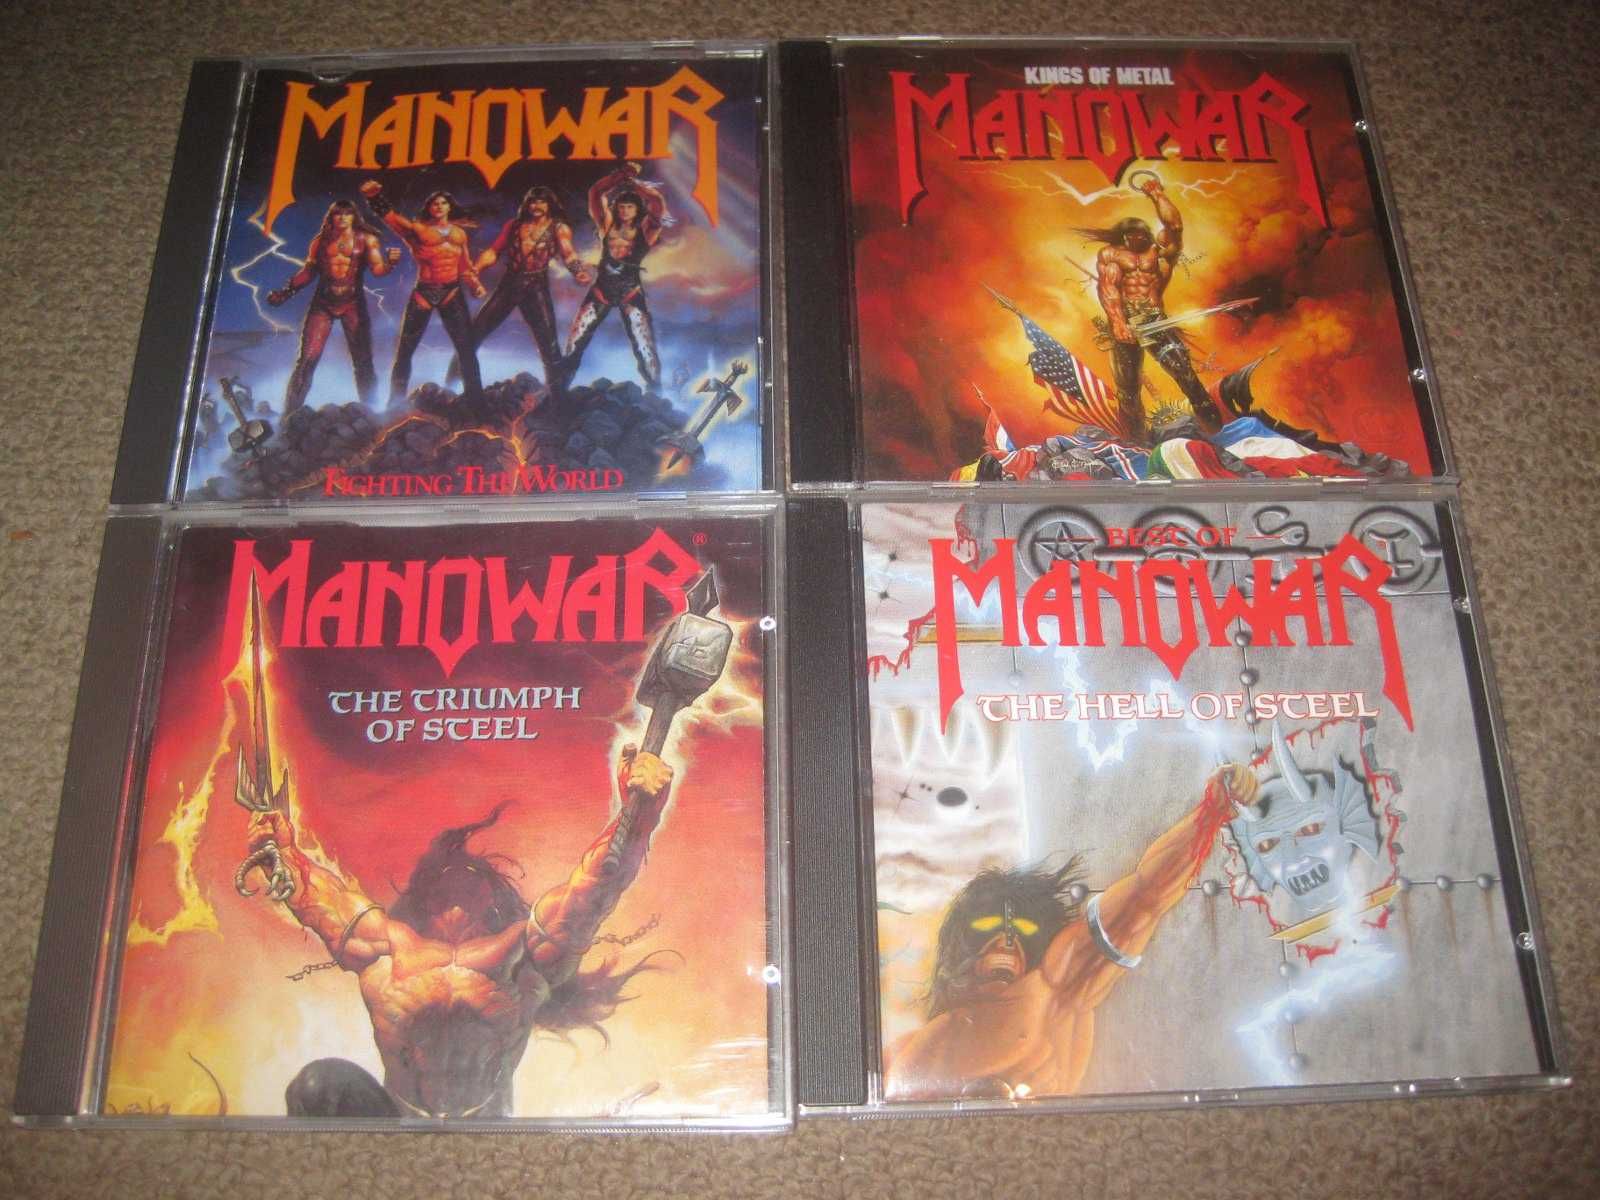 4 CDs dos "Manowar" Portes Grátis!